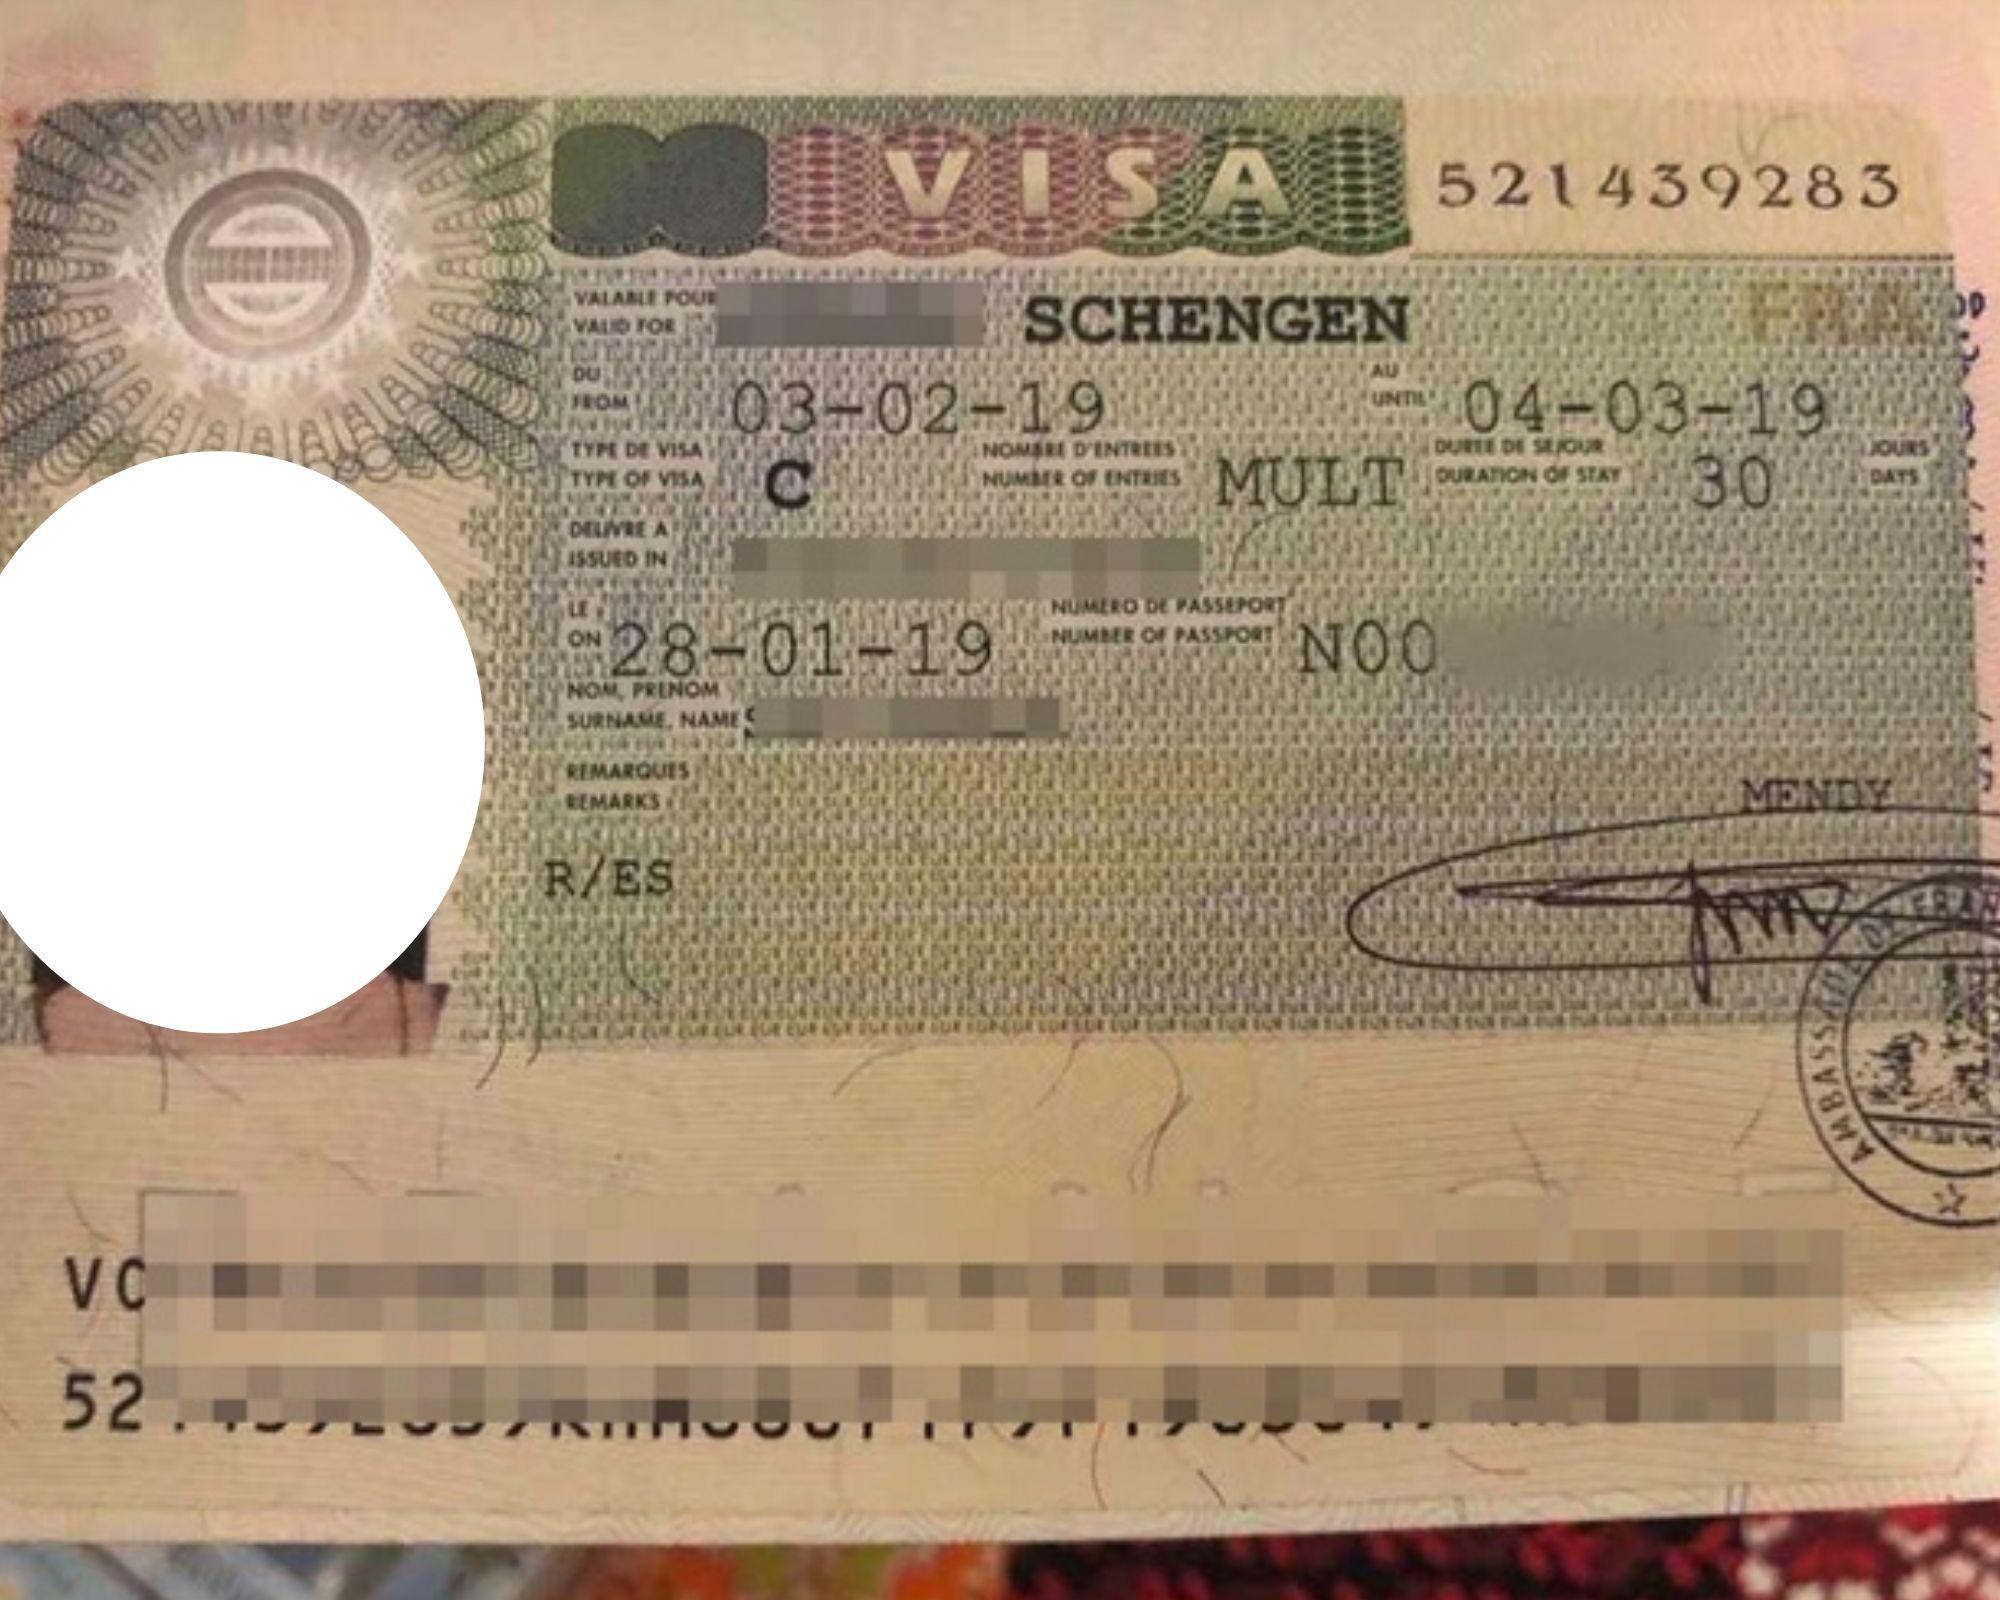 Dịch vụ visa thăm thân Luxembourg trọn gói, uy tín